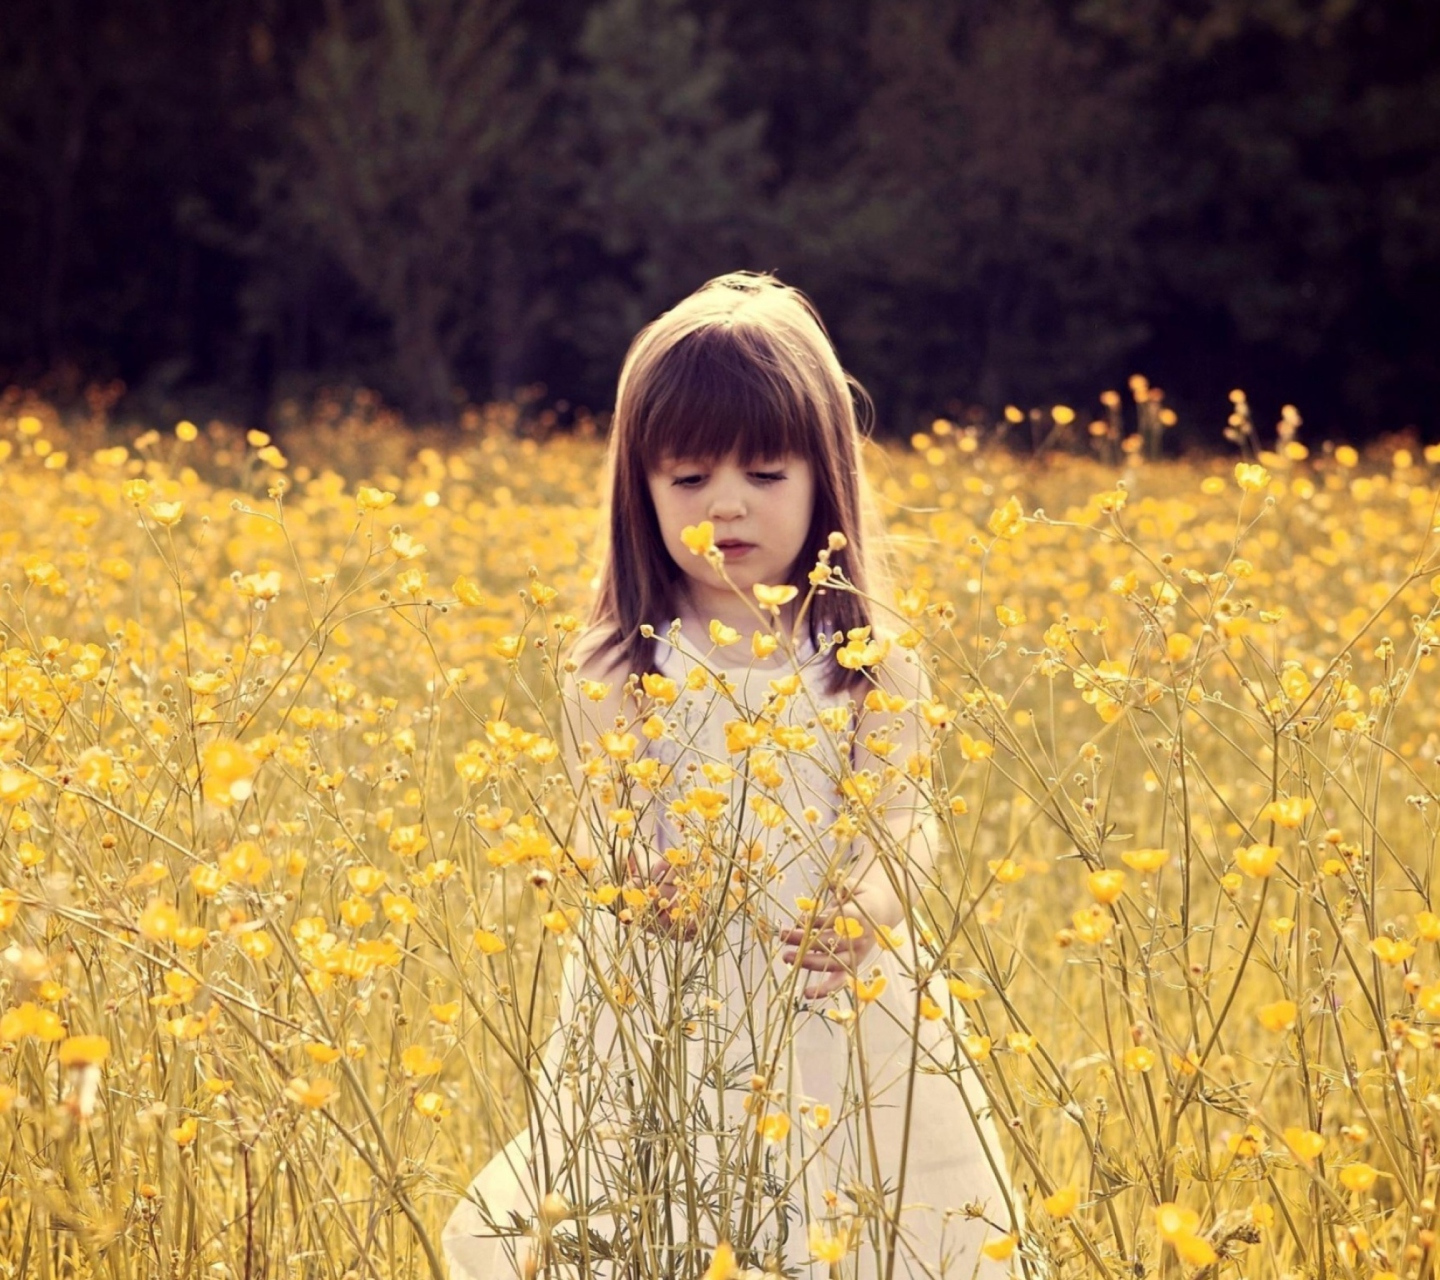 Cute Little Girl In Flower Field wallpaper 1440x1280